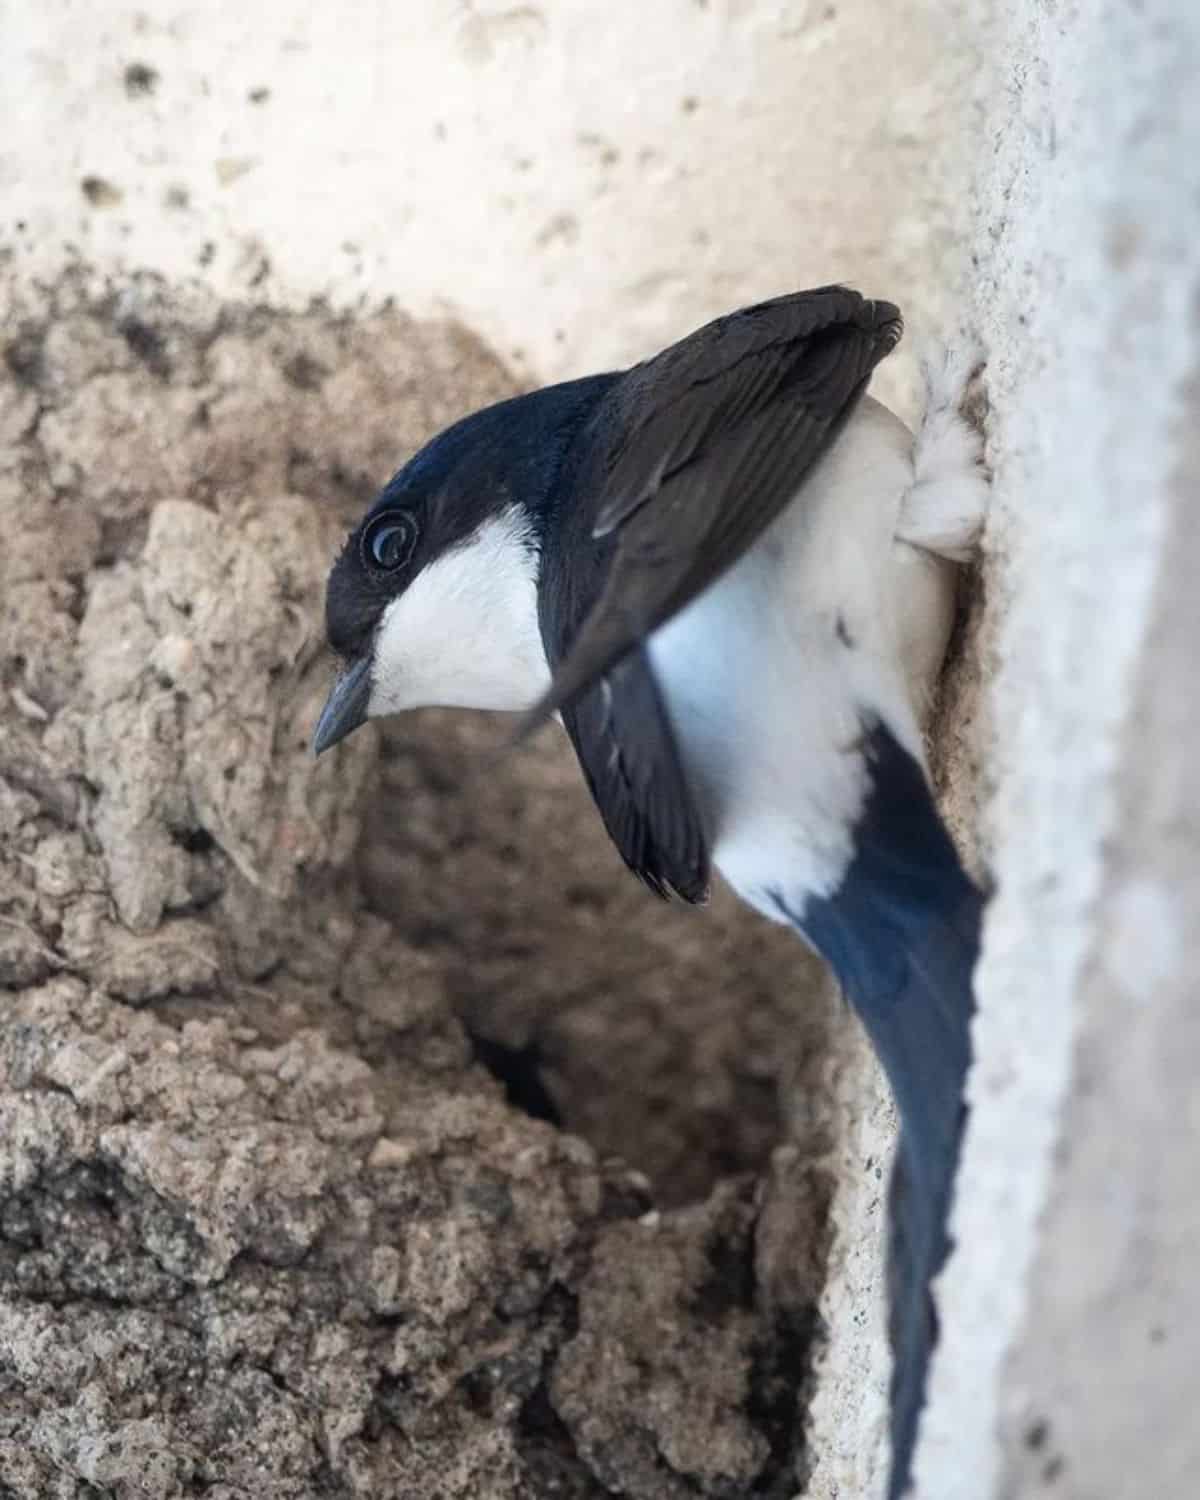 An adorable Common House Martin near a nest on a wall.